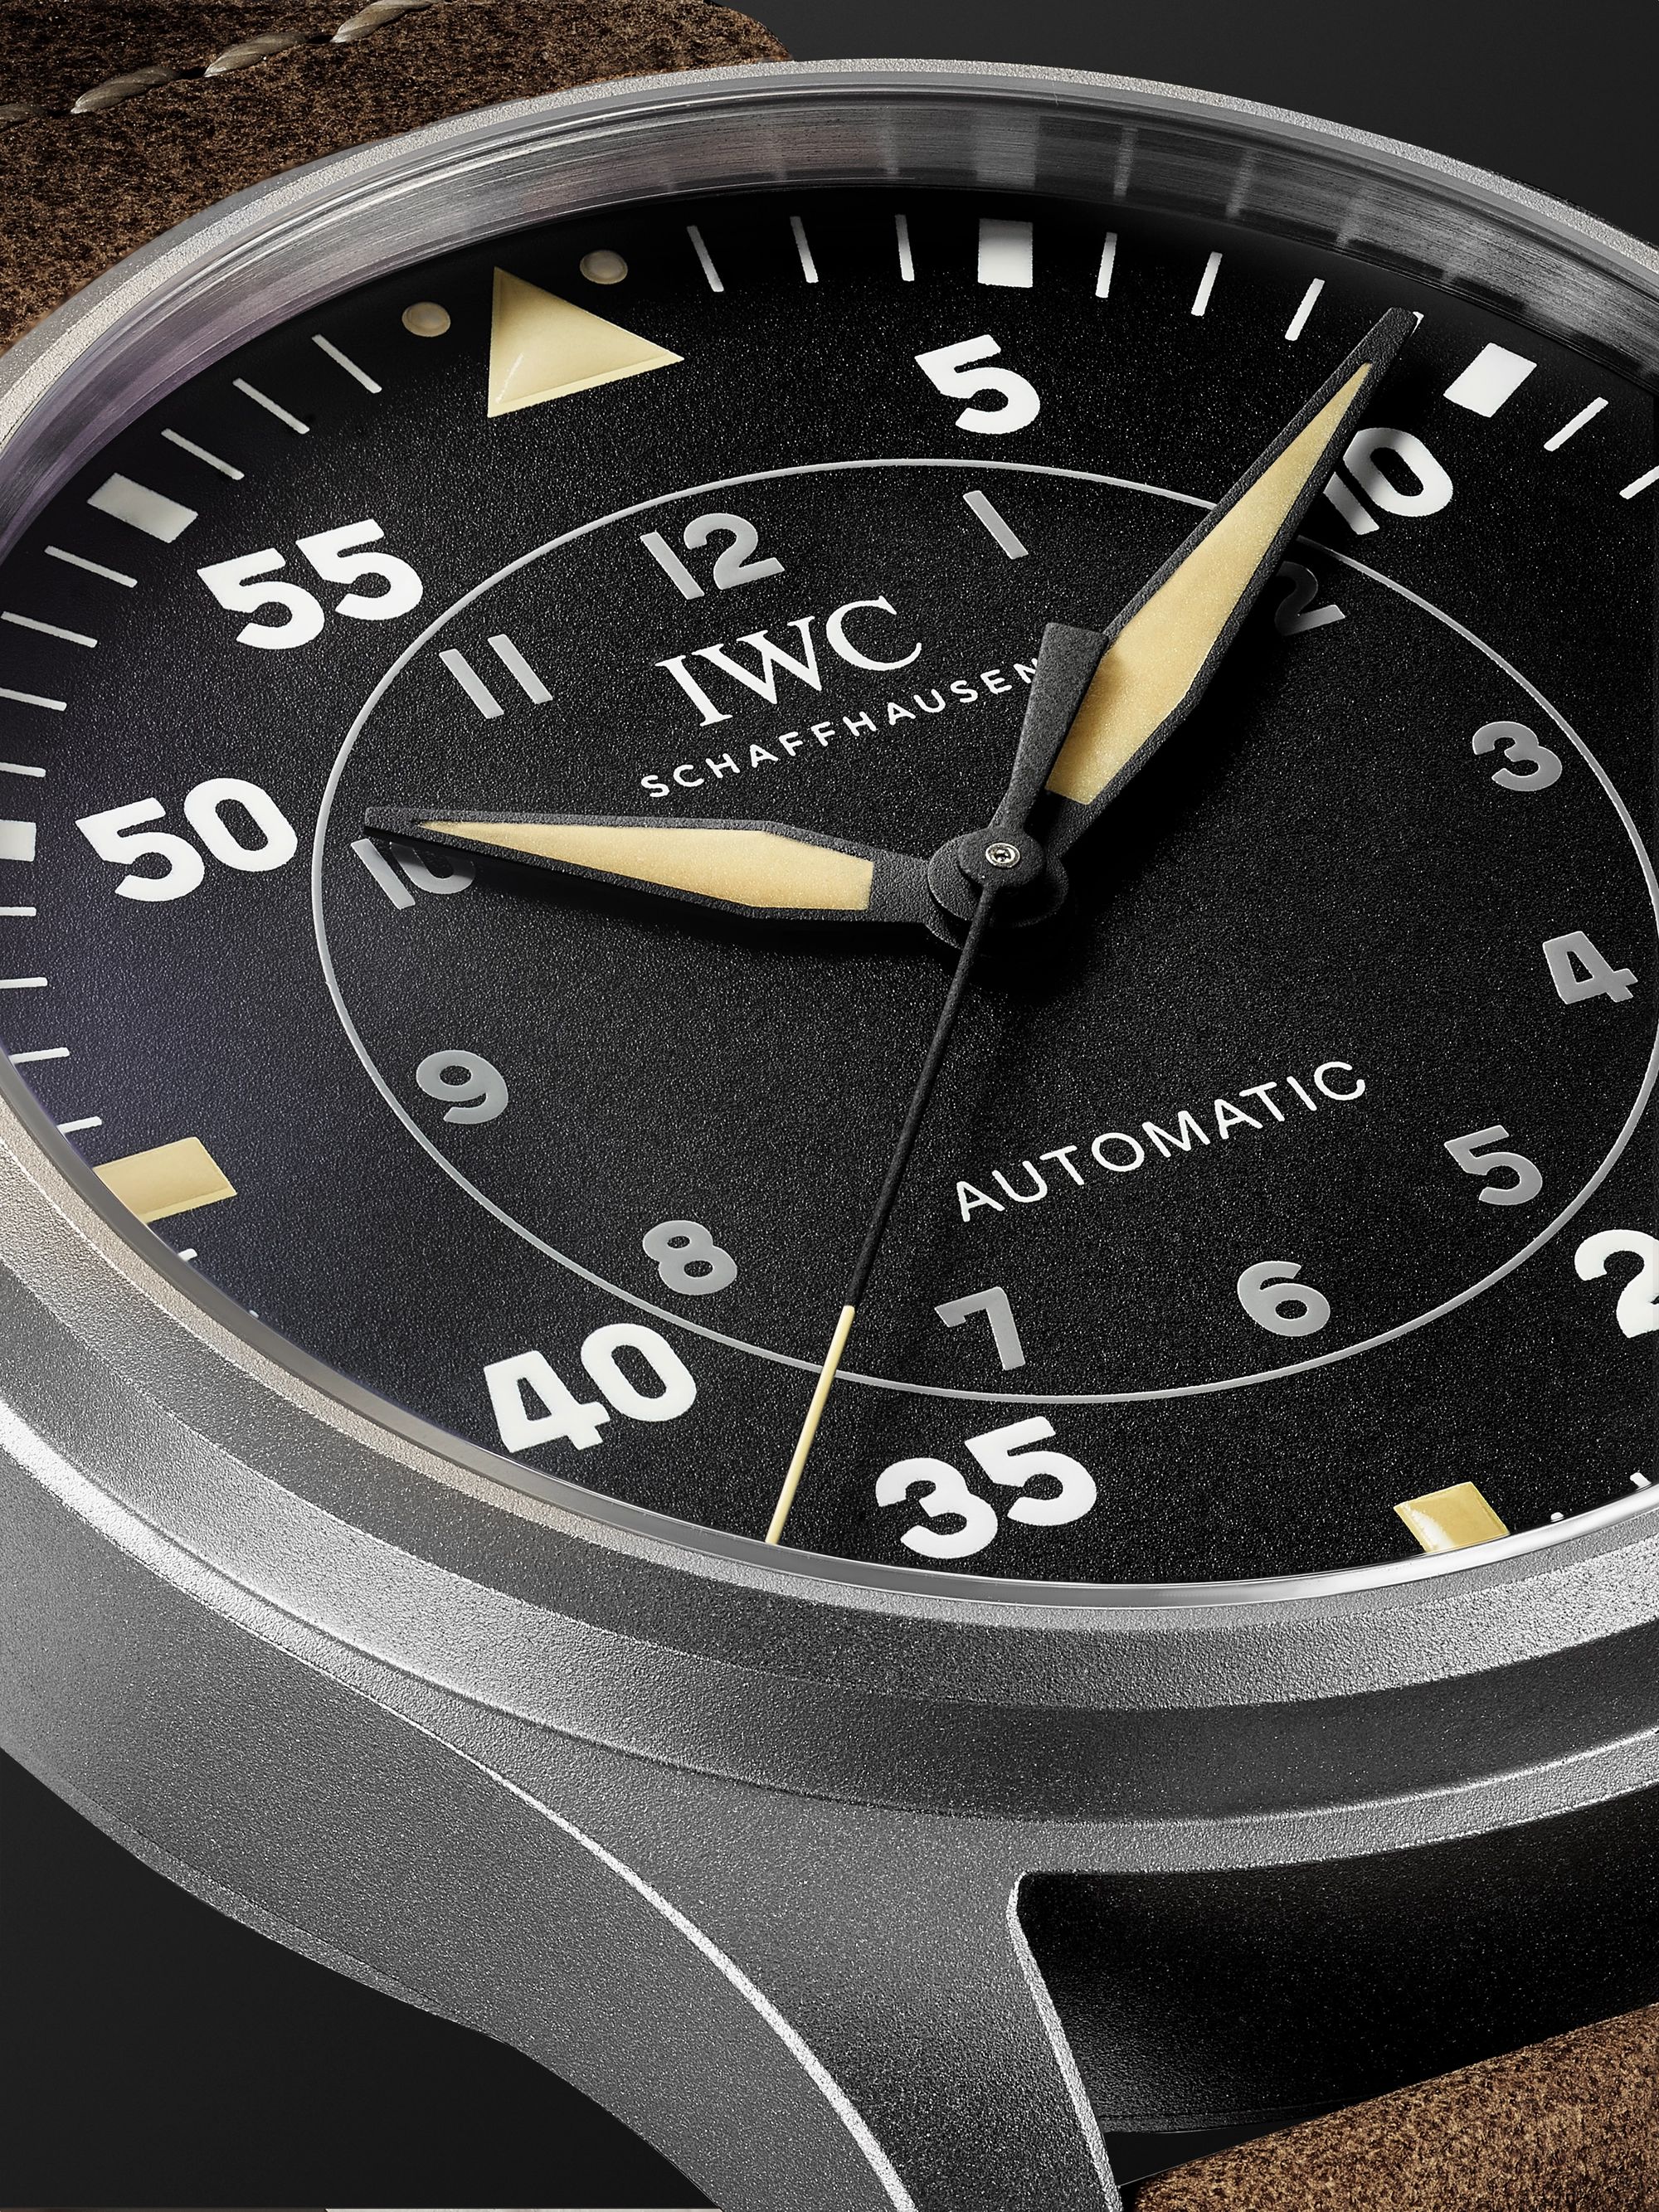 IWC SCHAFFHAUSEN Big Pilot's Watch Spitfire 43mm Titanium and Leather Watch, Ref No. IW329701